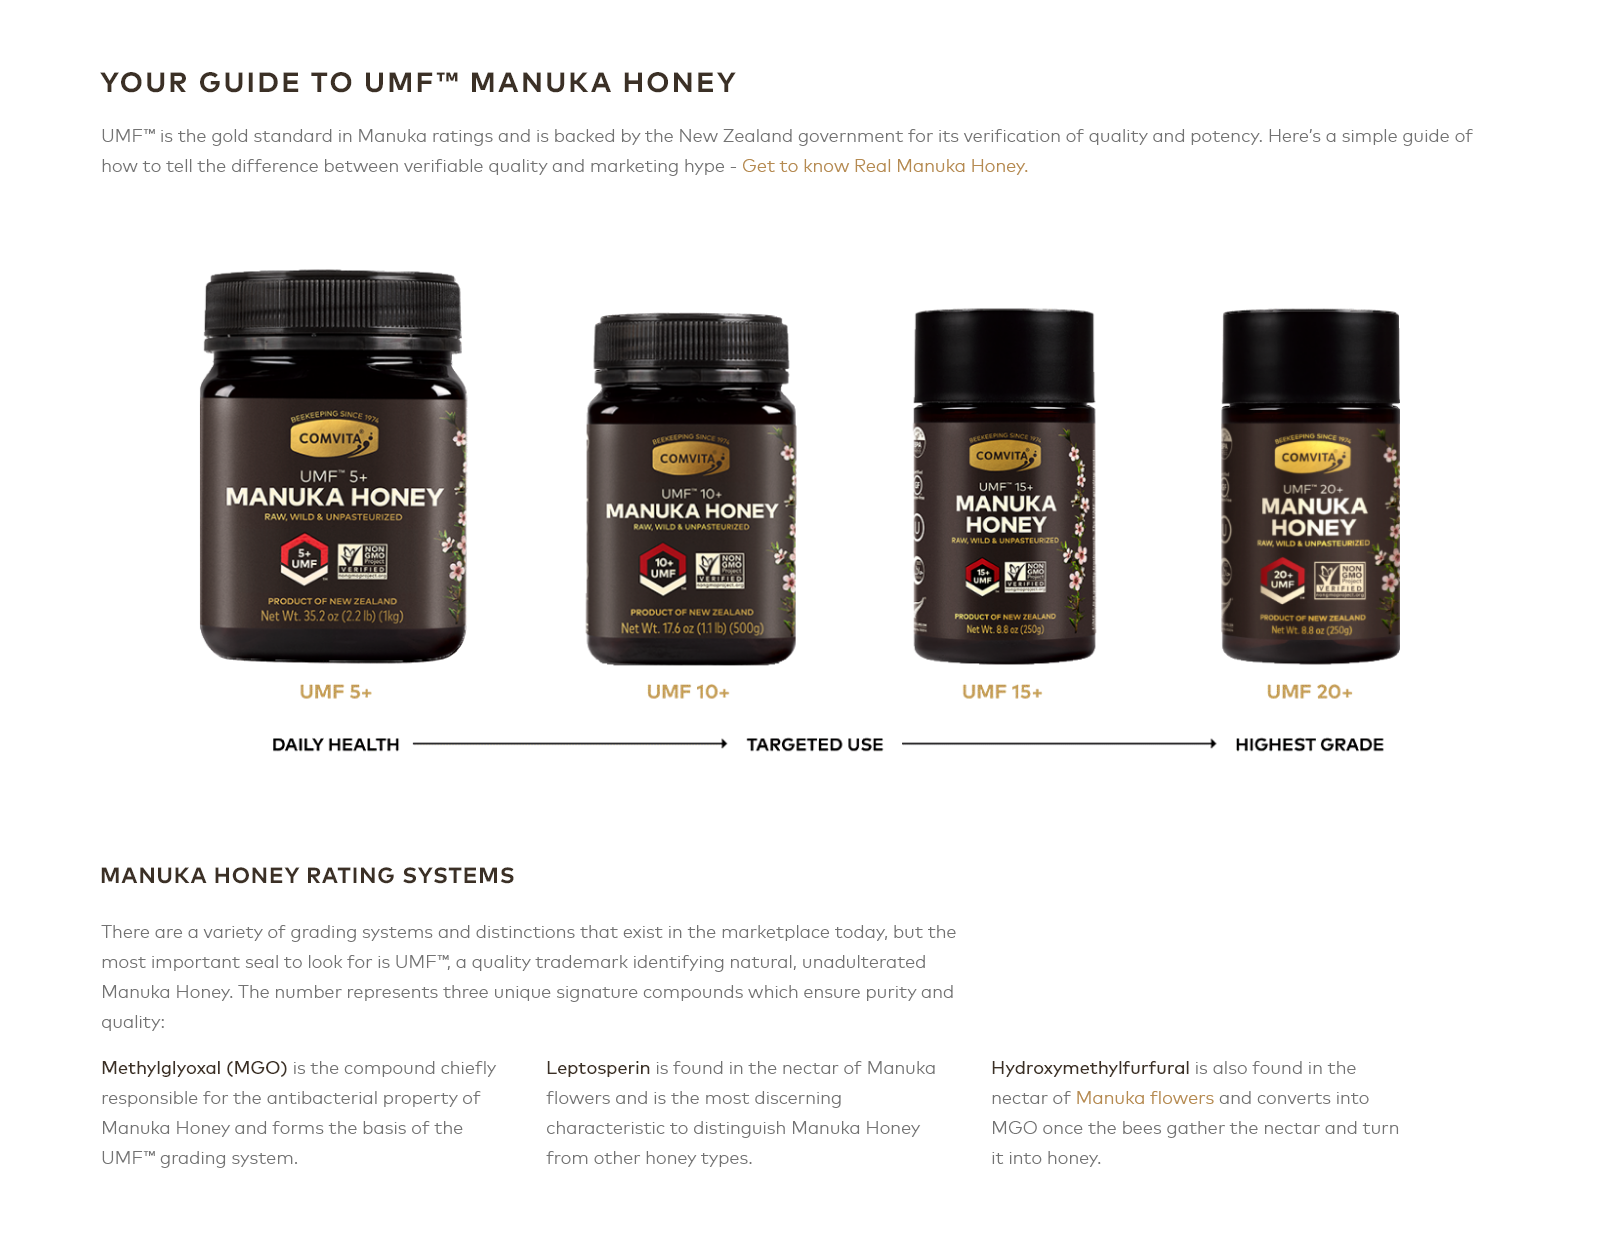 Guide to UMF manuka honey